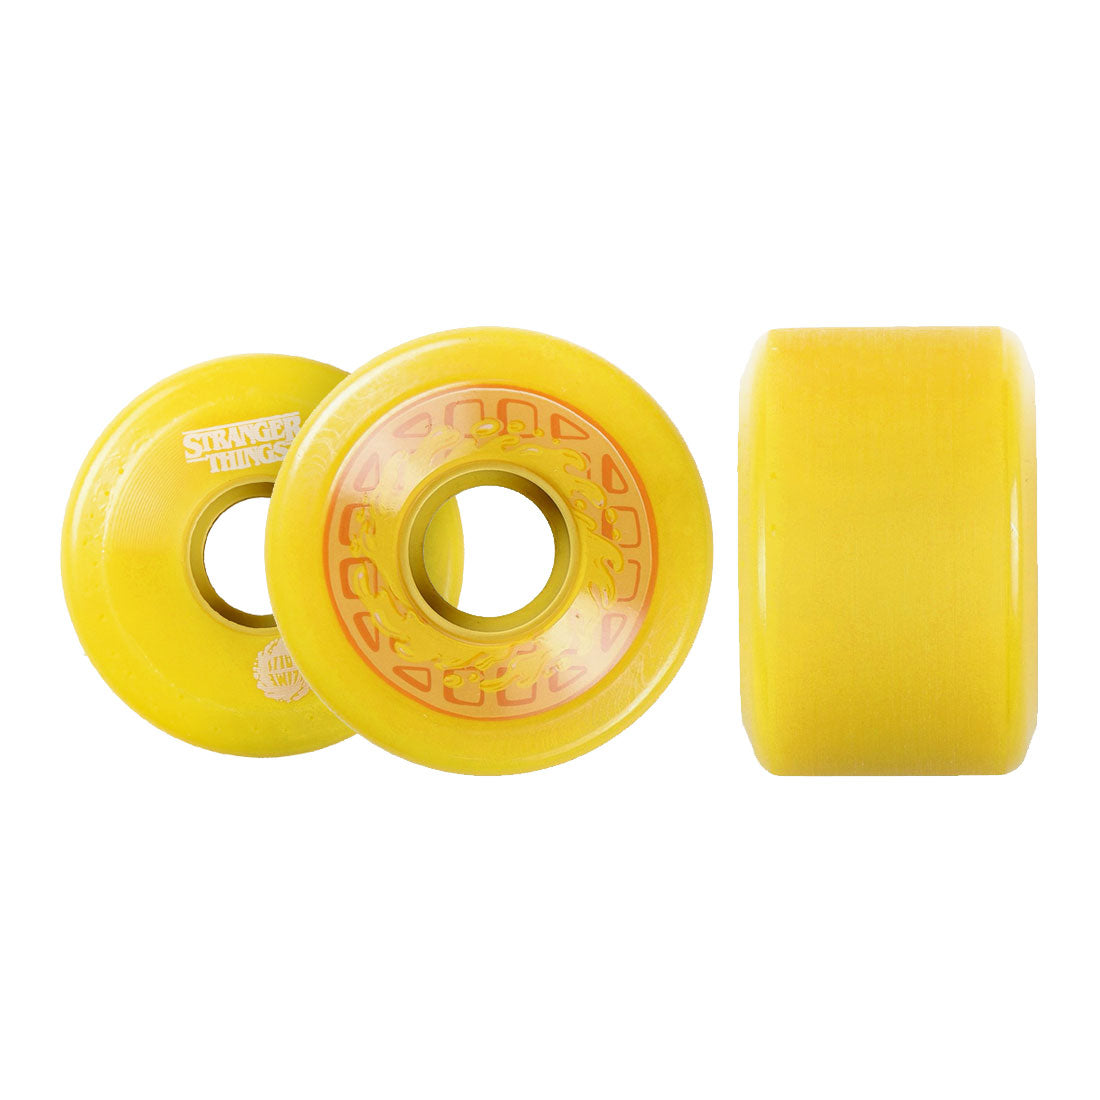 Slime Balls x Stranger Things OG Slime 60mm 78a - Butter Yellow Skateboard Wheels